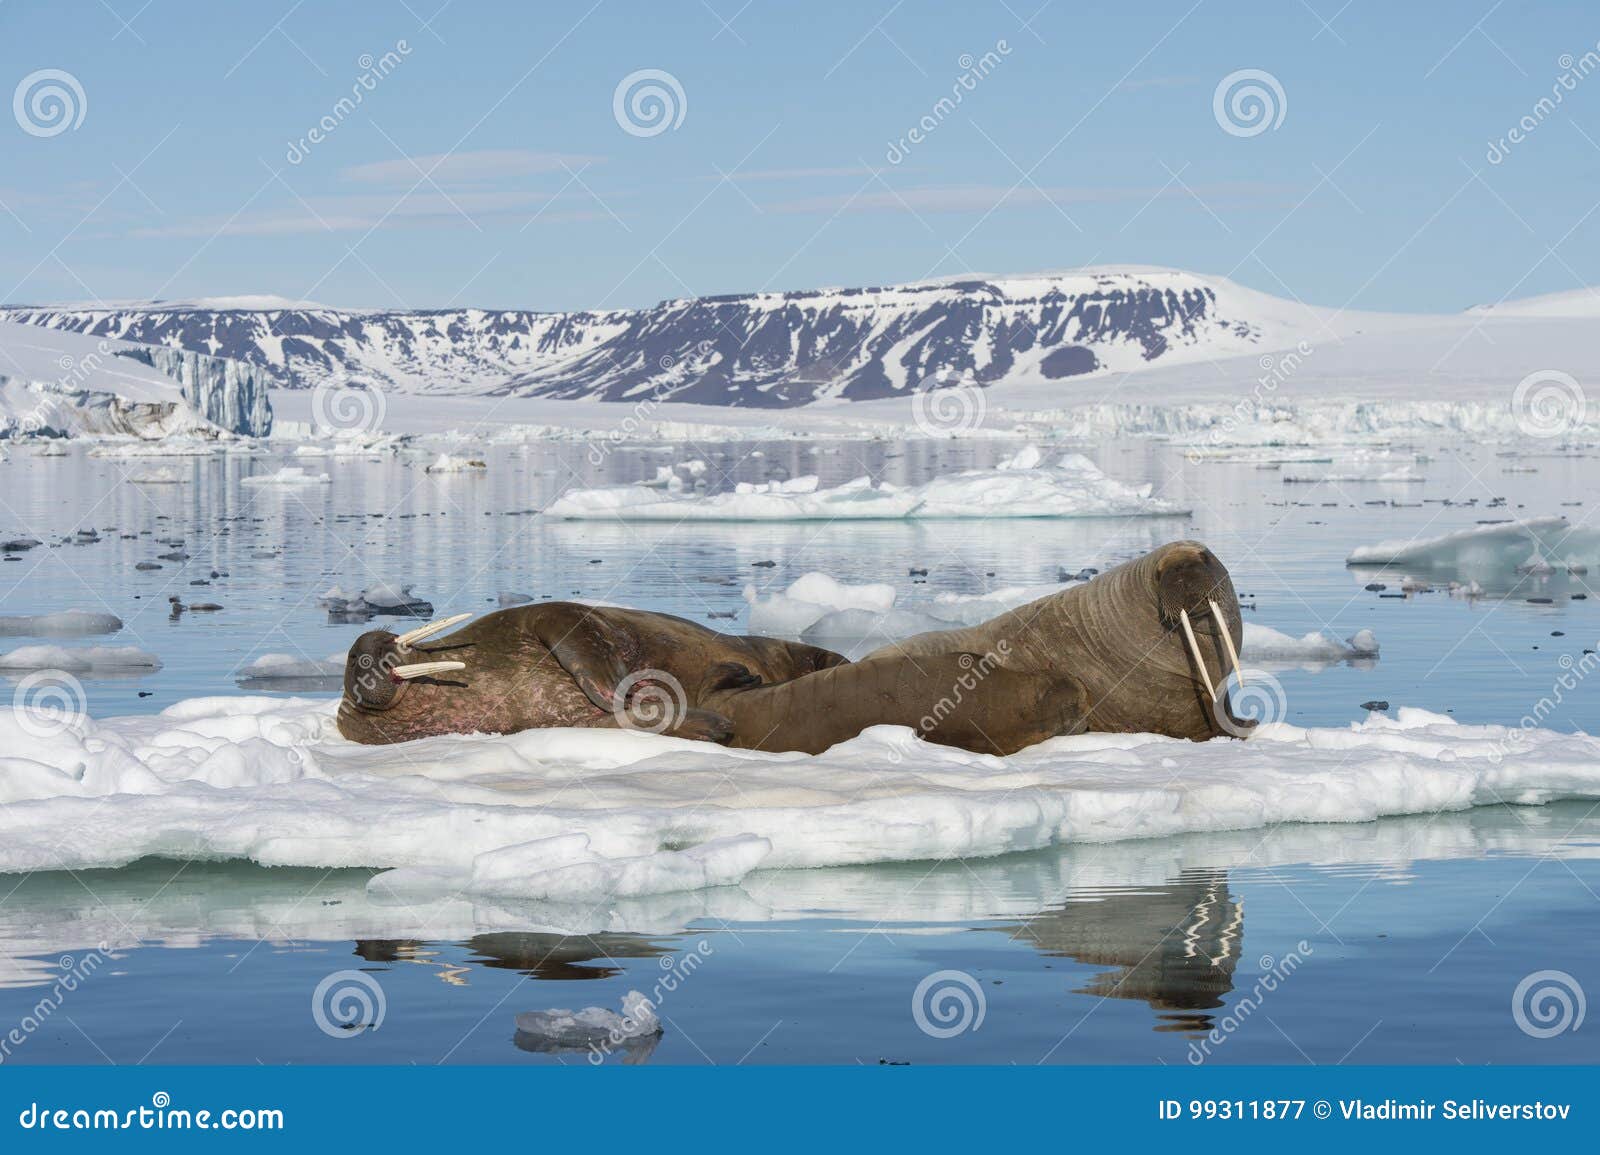 Walruses On Ice Flow Stock Image Image Of Tusk Water 99311877